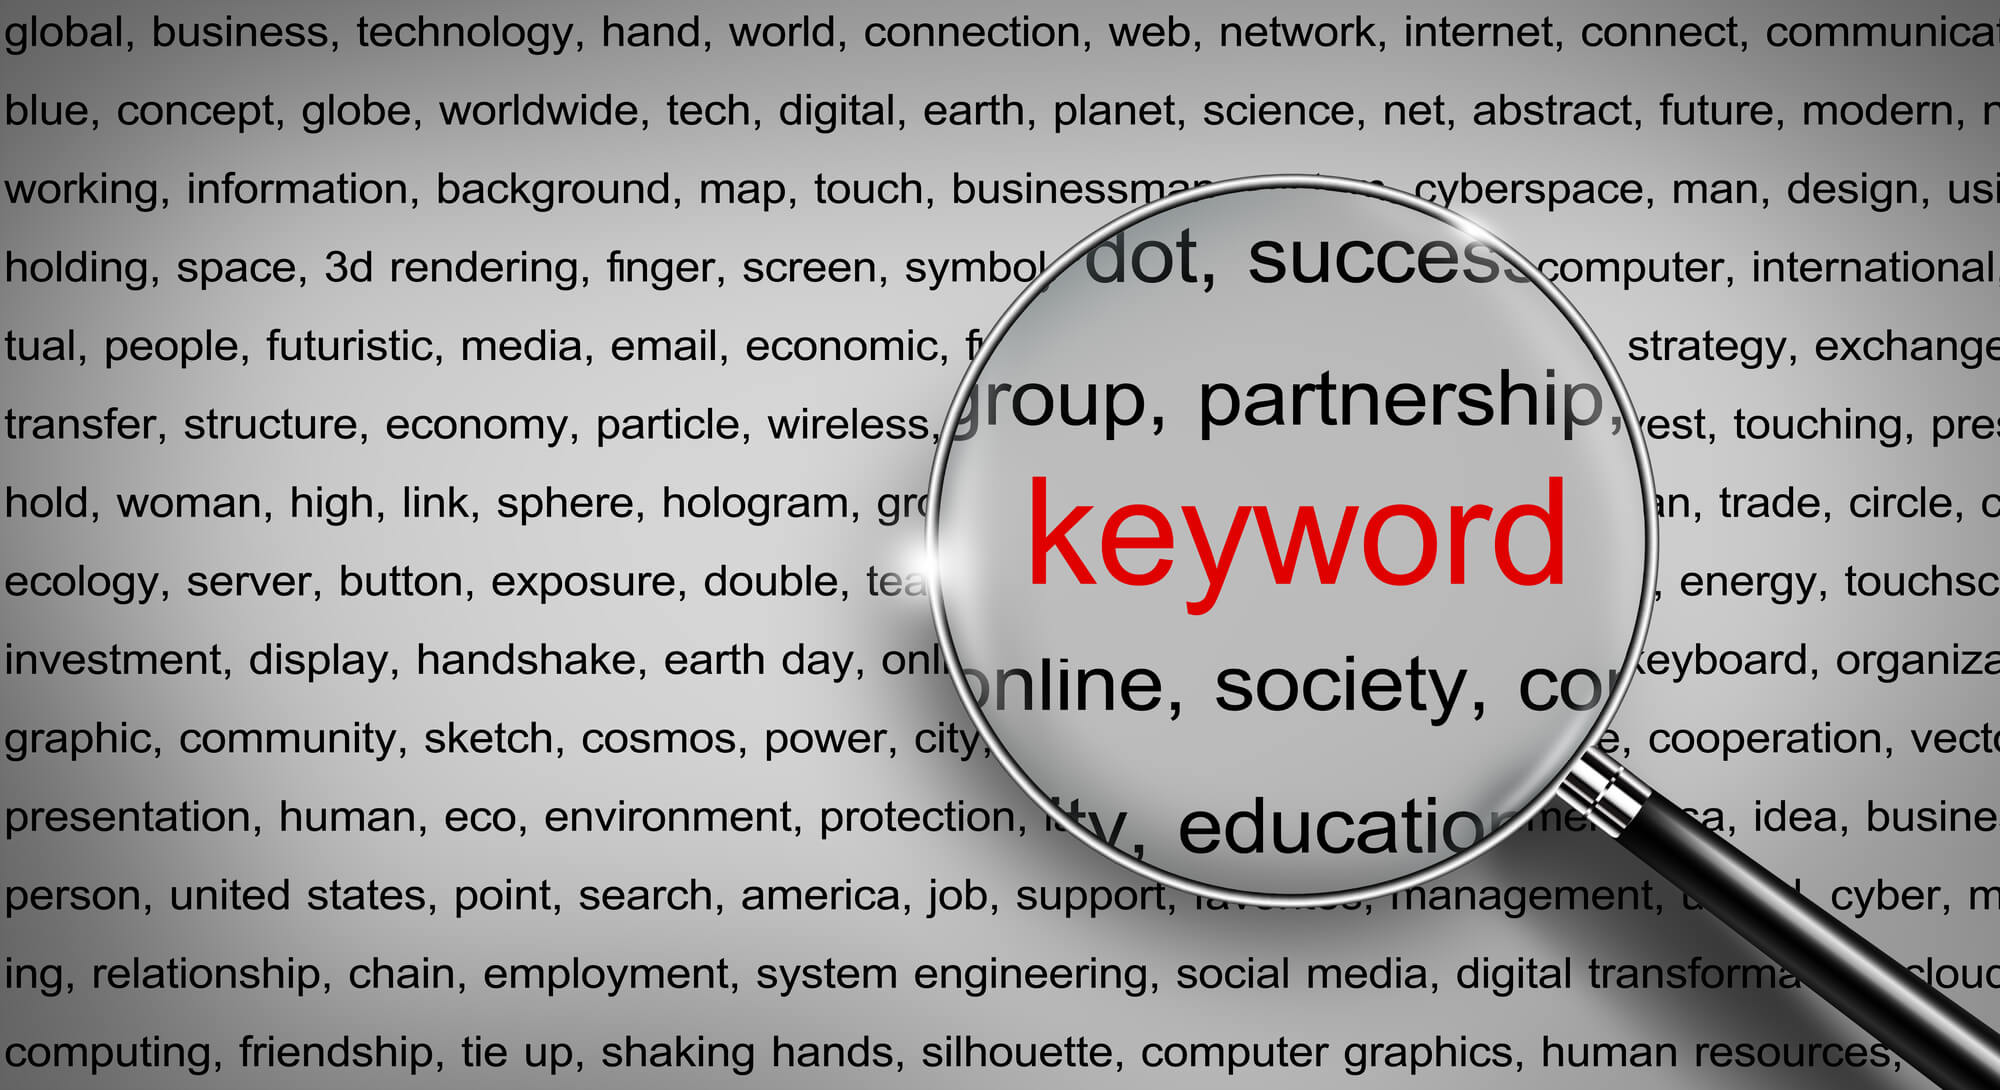 コンテンツSEO・ブログ集客に必要なキーワード選定方法